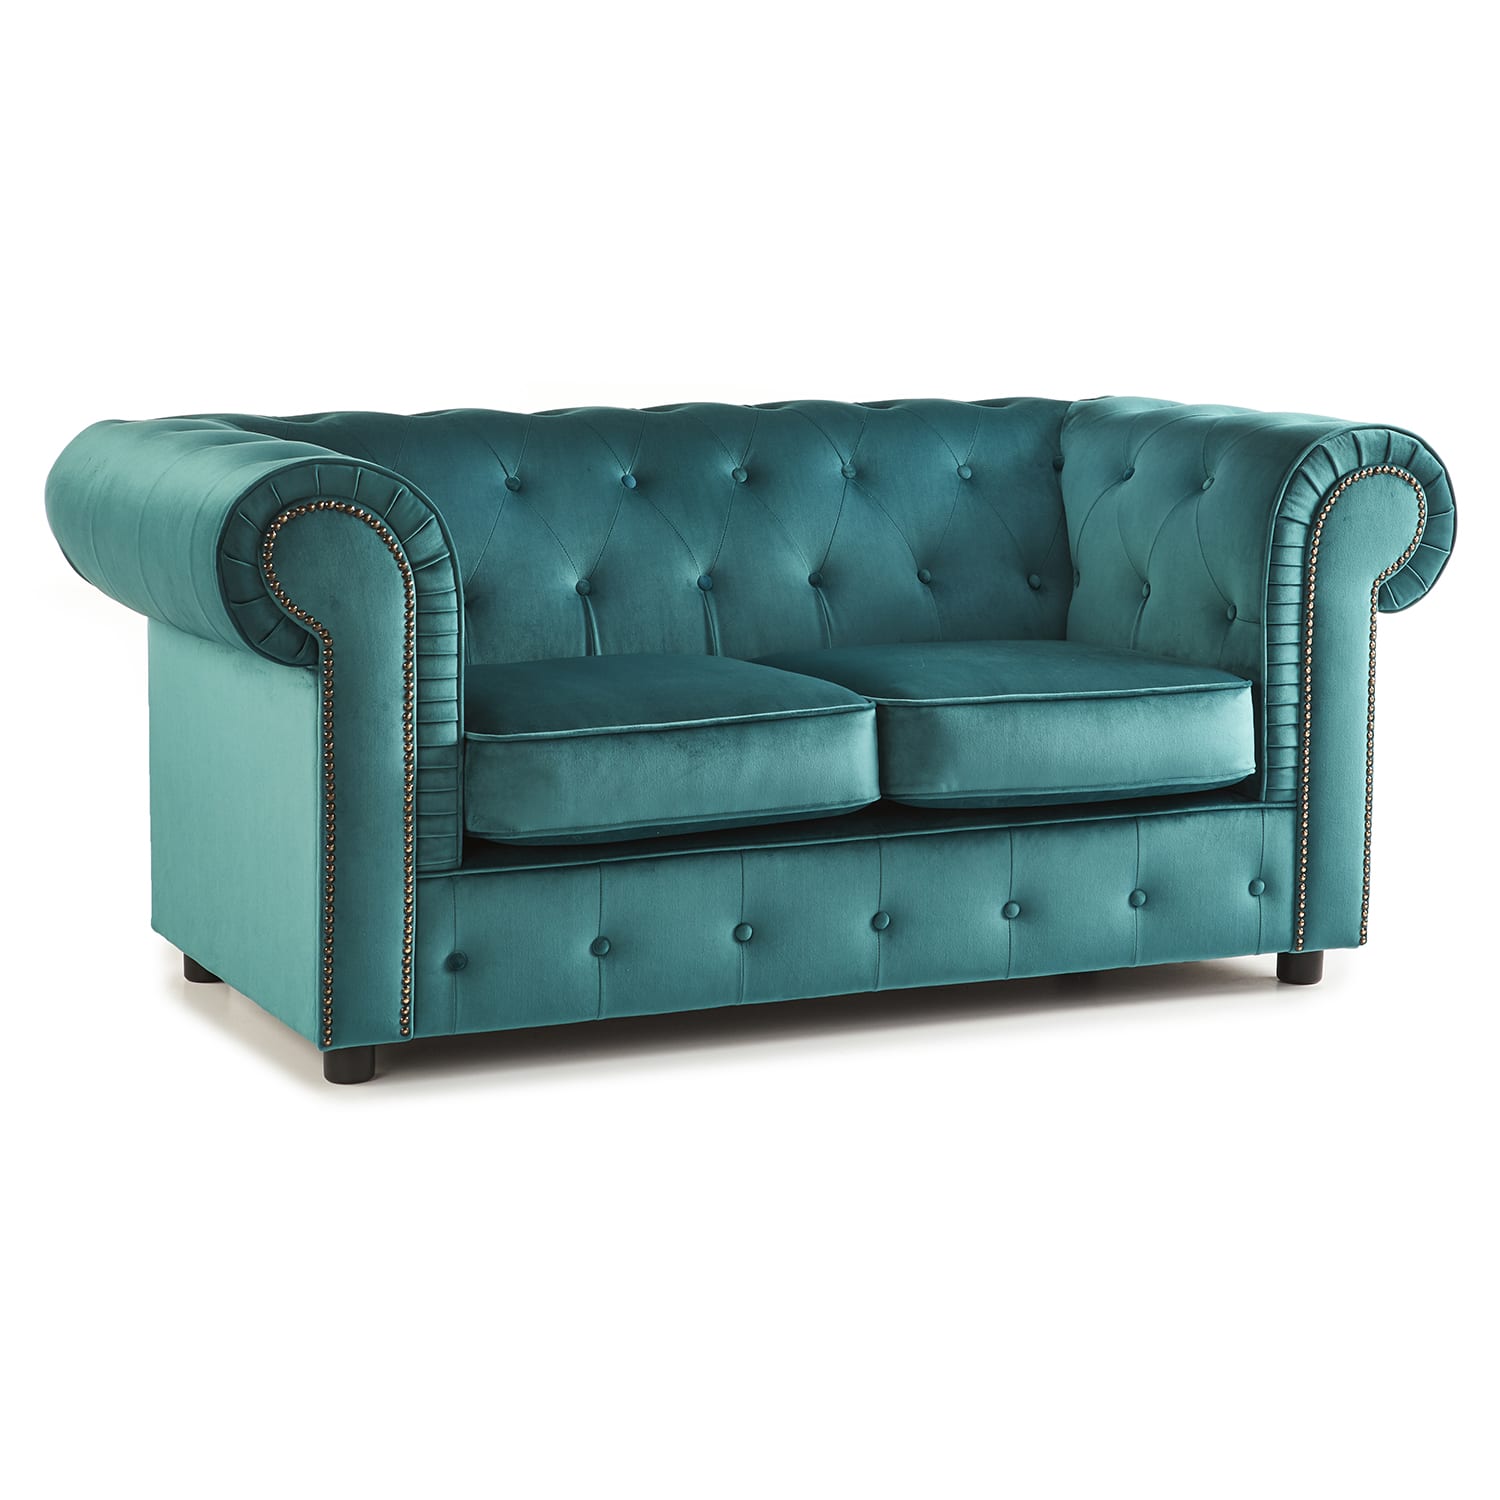 The Ashcroft Soft Velvet Chesterfield 2 Seater Sofa - Teal